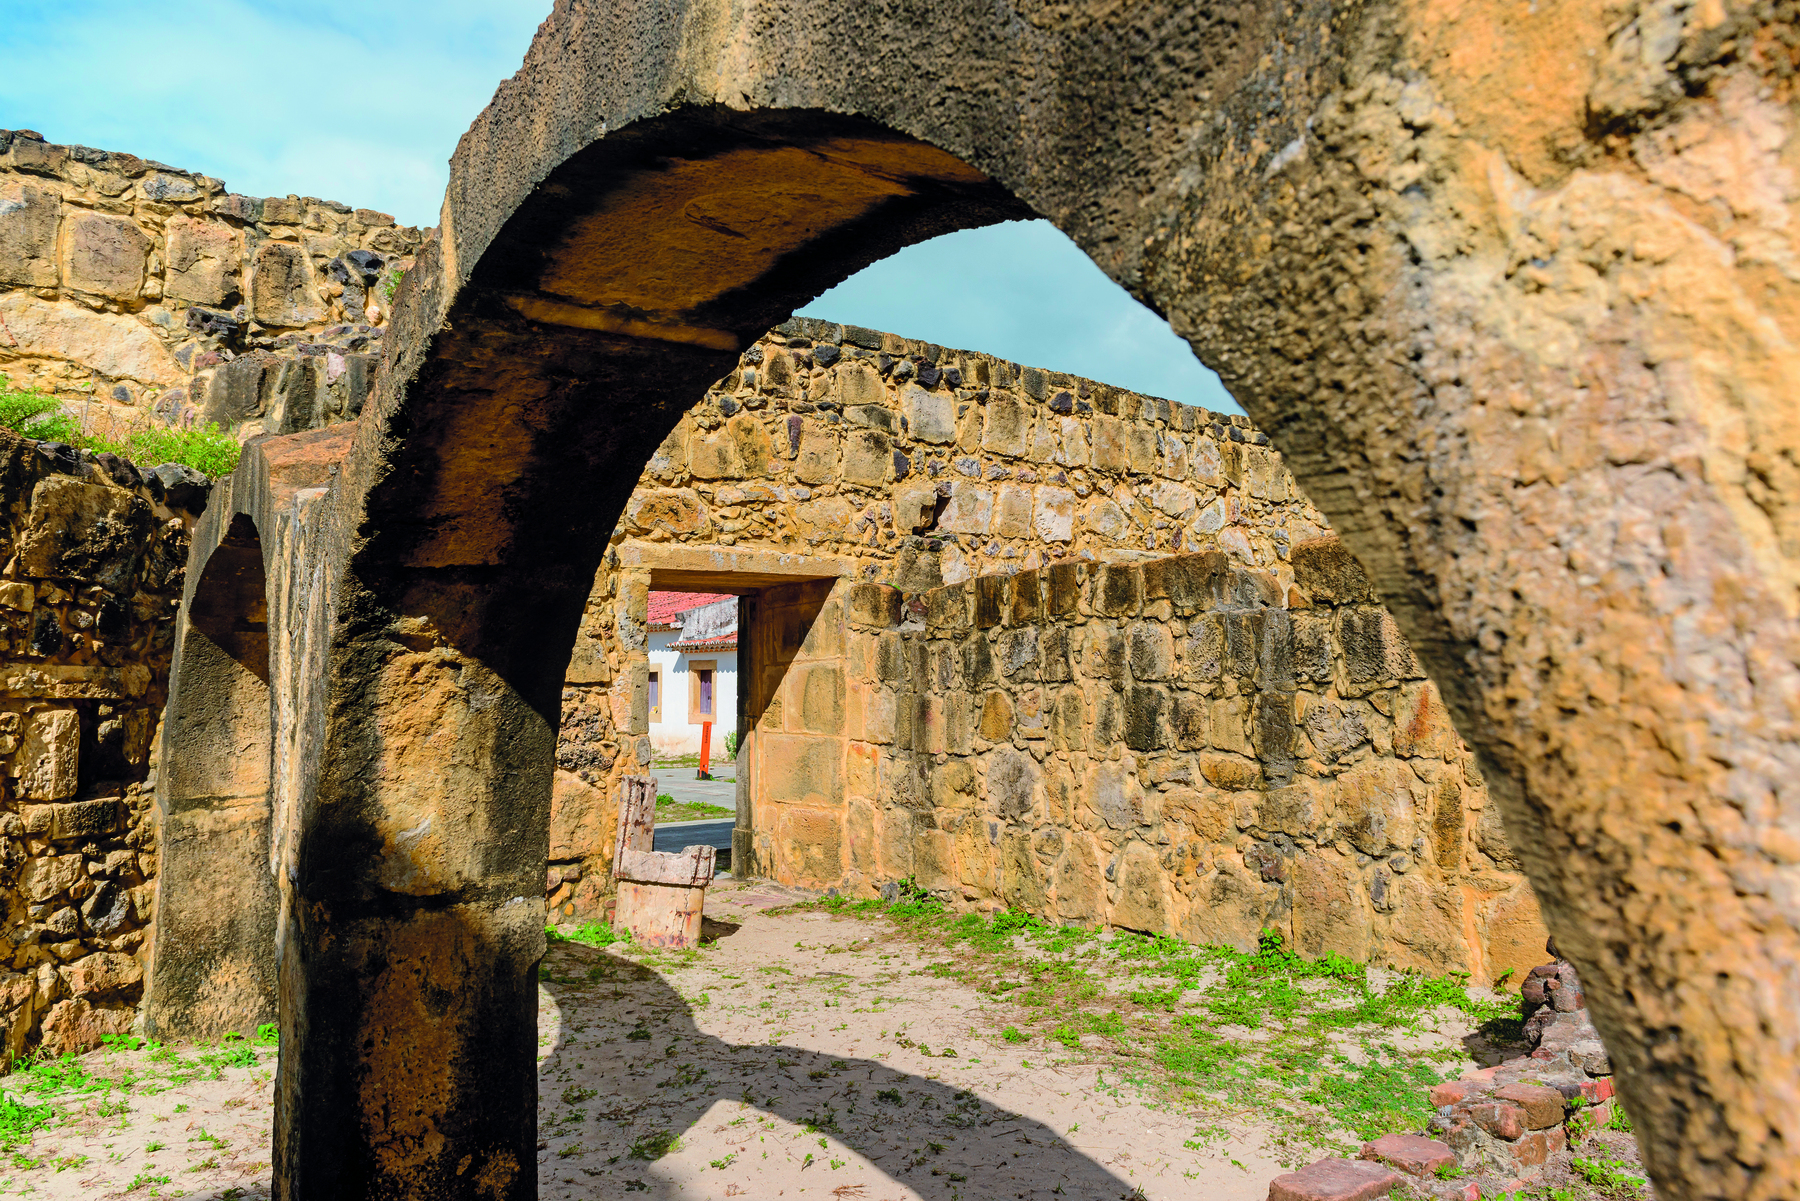 Fotografia. Uma construção de pedra em ruínas, com destaque para arcos com aberturas ao centro.